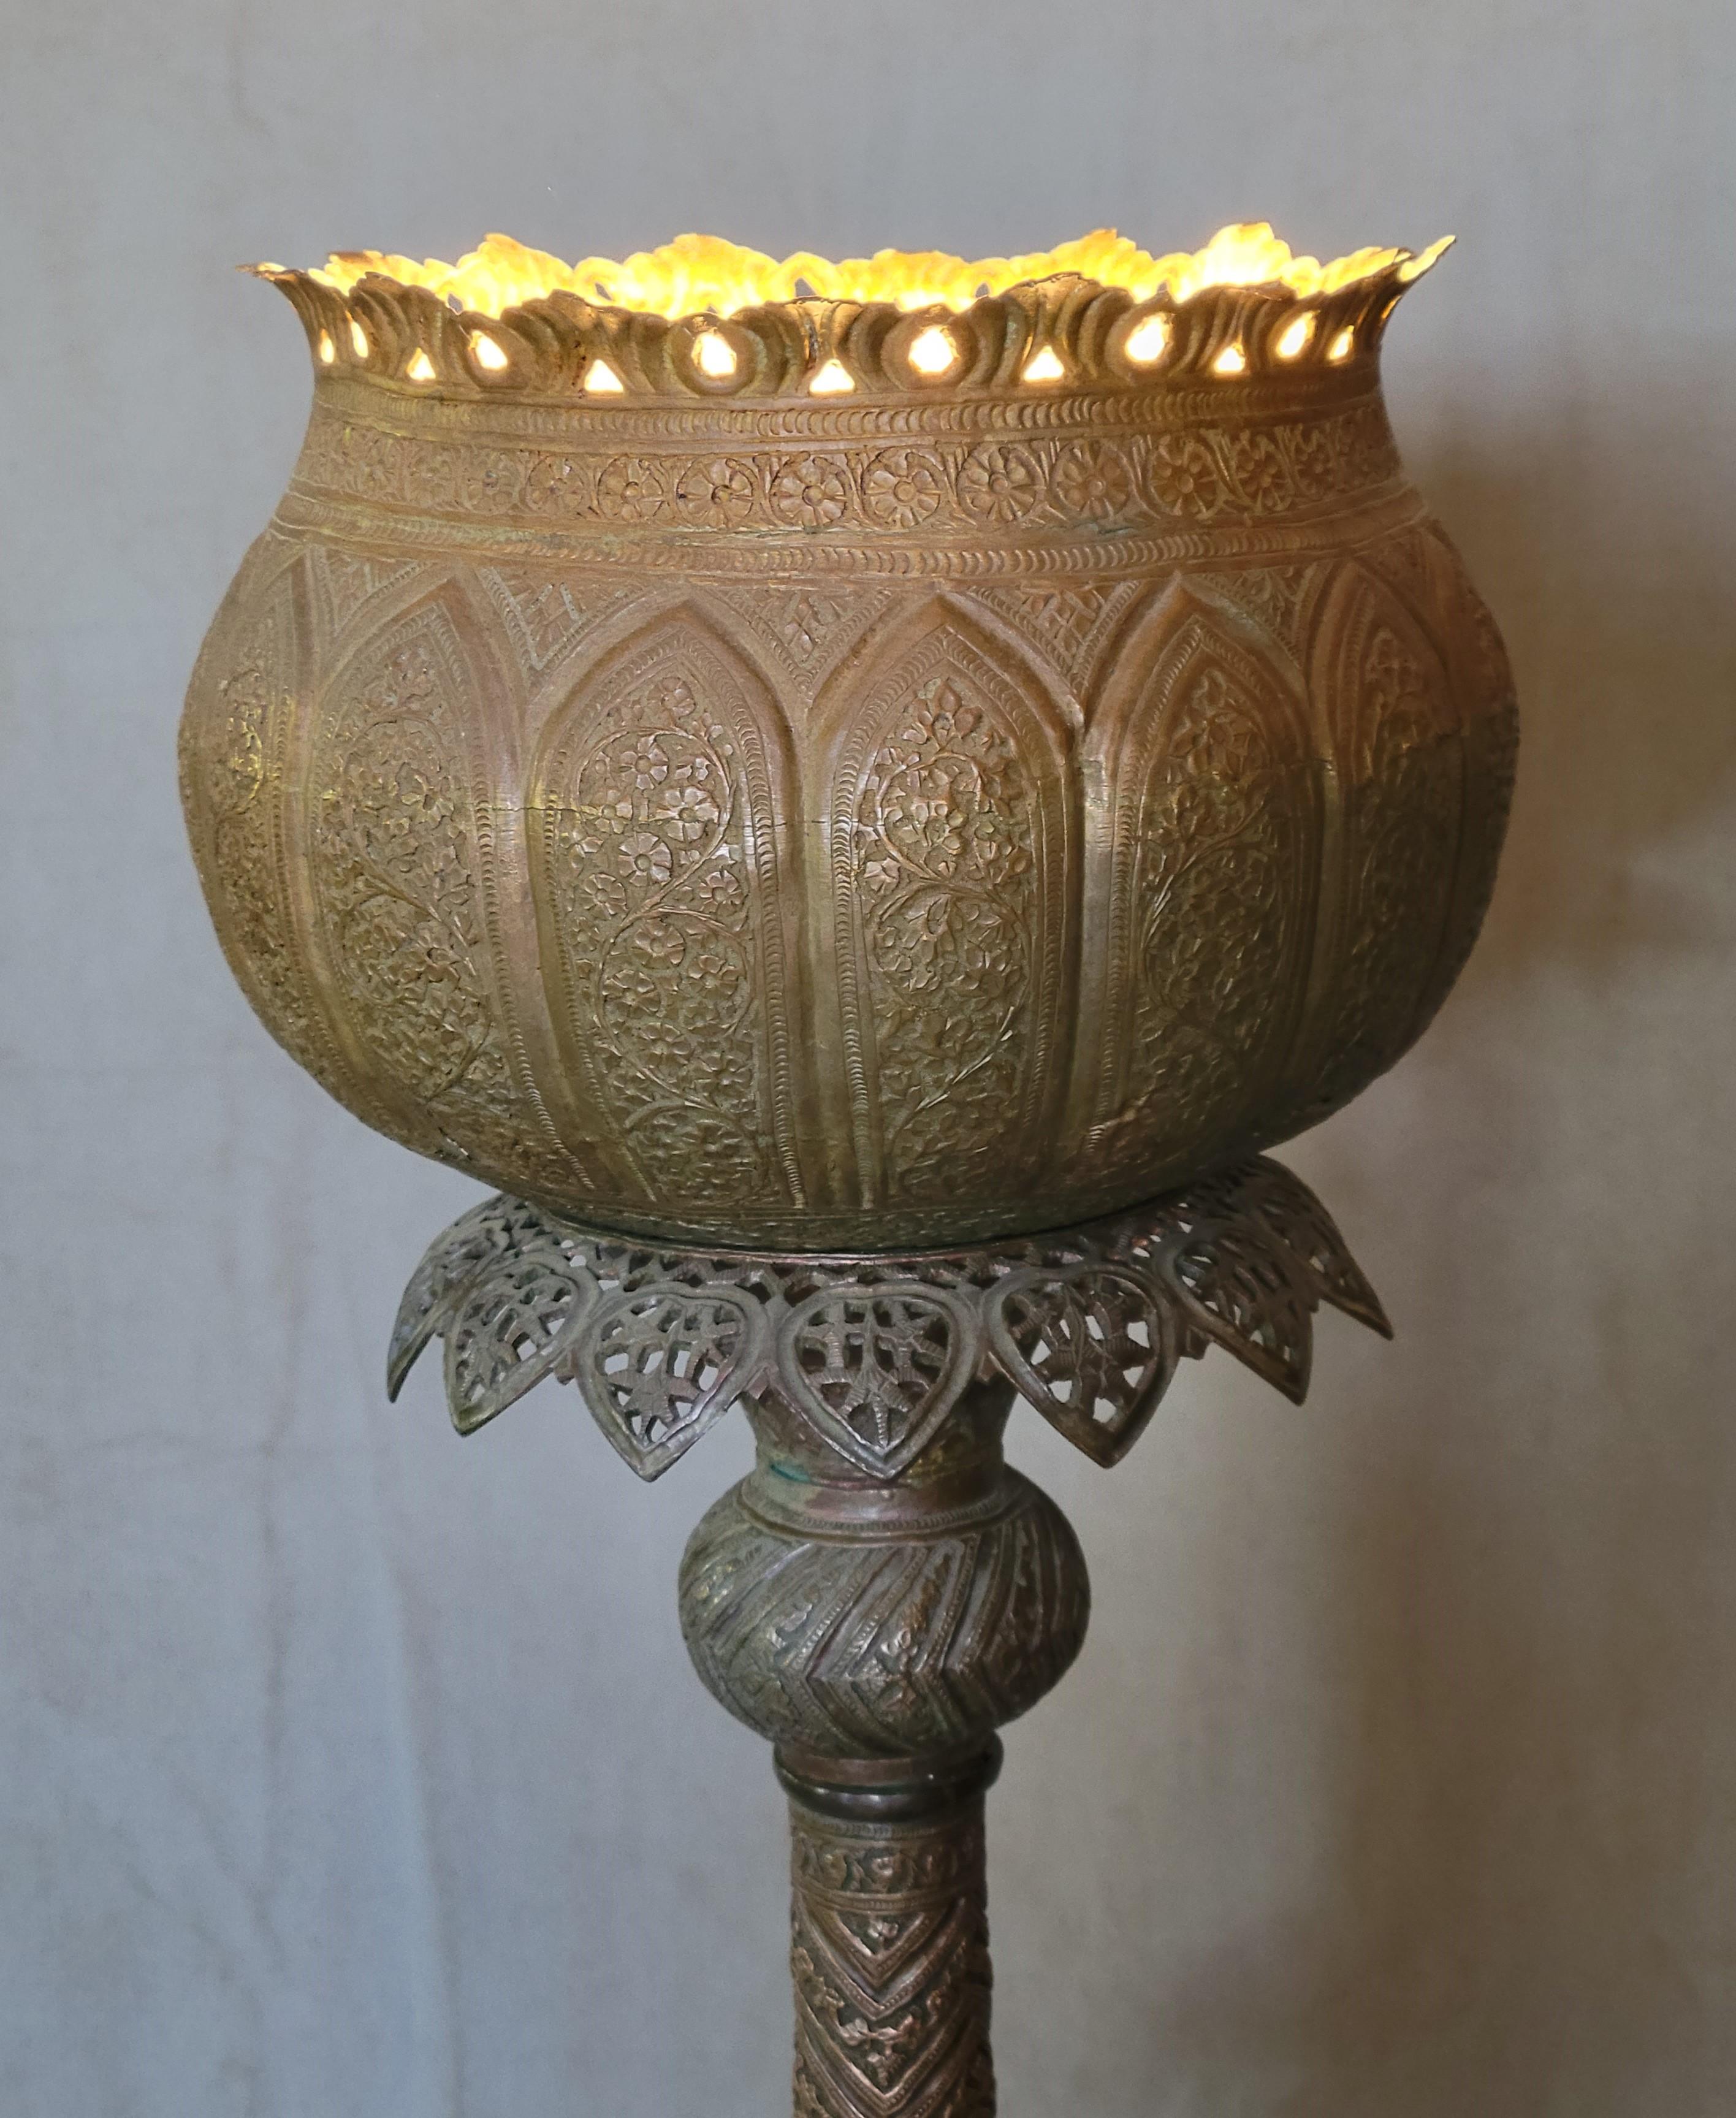 Un produit qui attire l'attention,  Magnifique lampe torchère antique en cuivre incisé et percé du Moyen-Orient / Maroc / Maure. Nouveau câblage avec nouvel interrupteur au sol et ampoule LED de 6